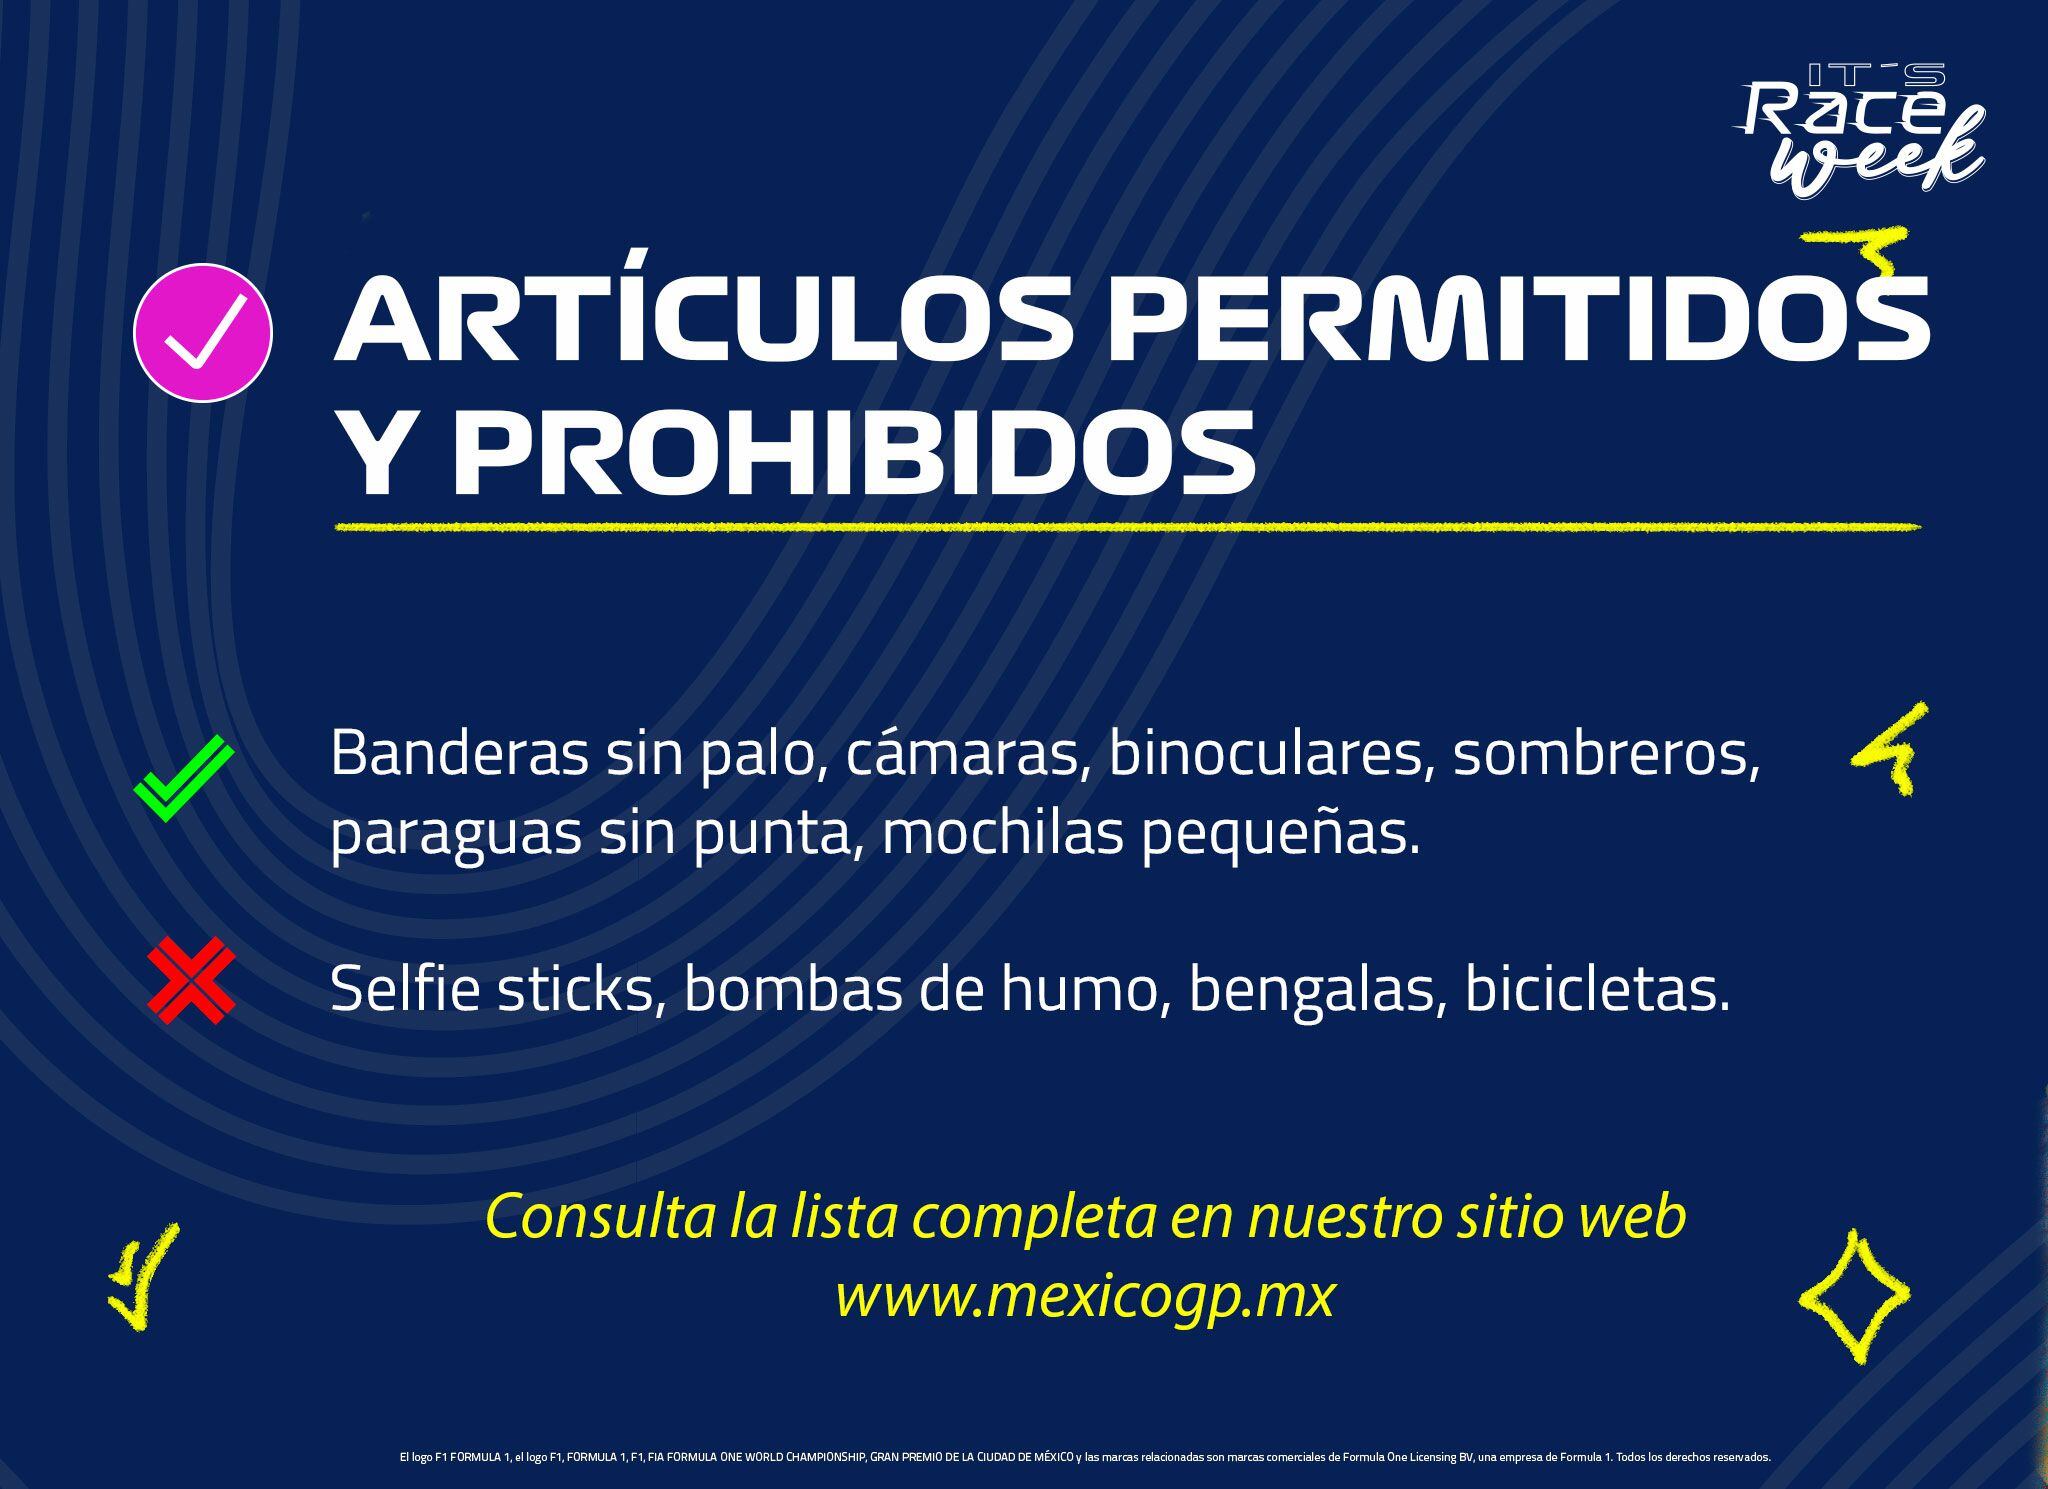 Artículos permitidos y no permitidos para el GP de México 2023. (Foto: Facebook / @mexicogp)